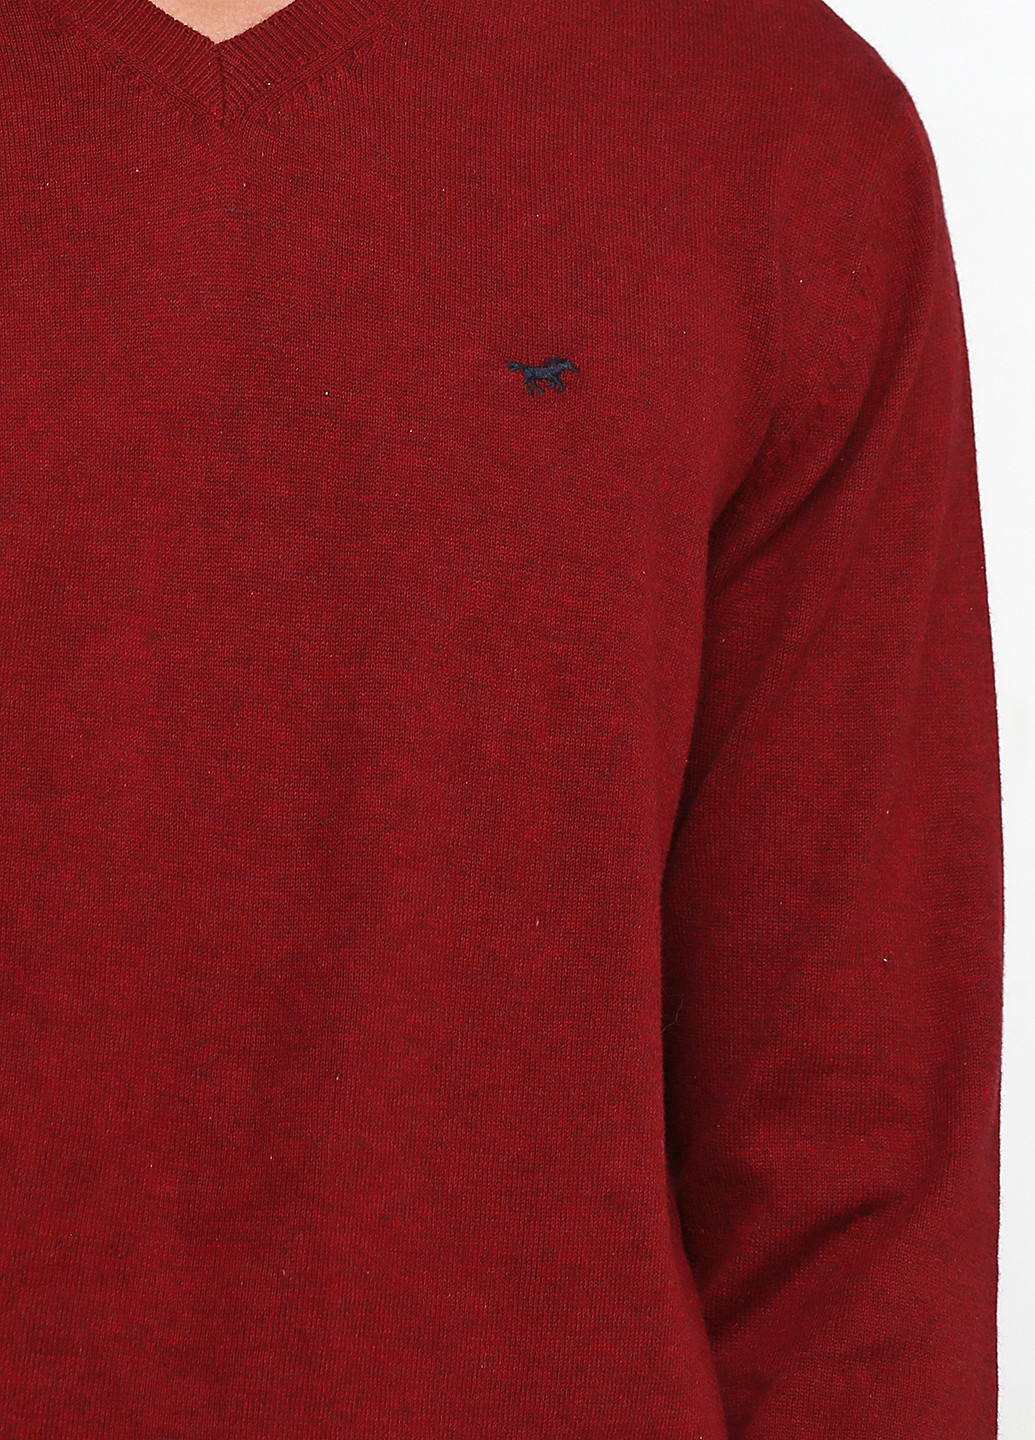 Темно-красный демисезонный пуловер пуловер Mustang